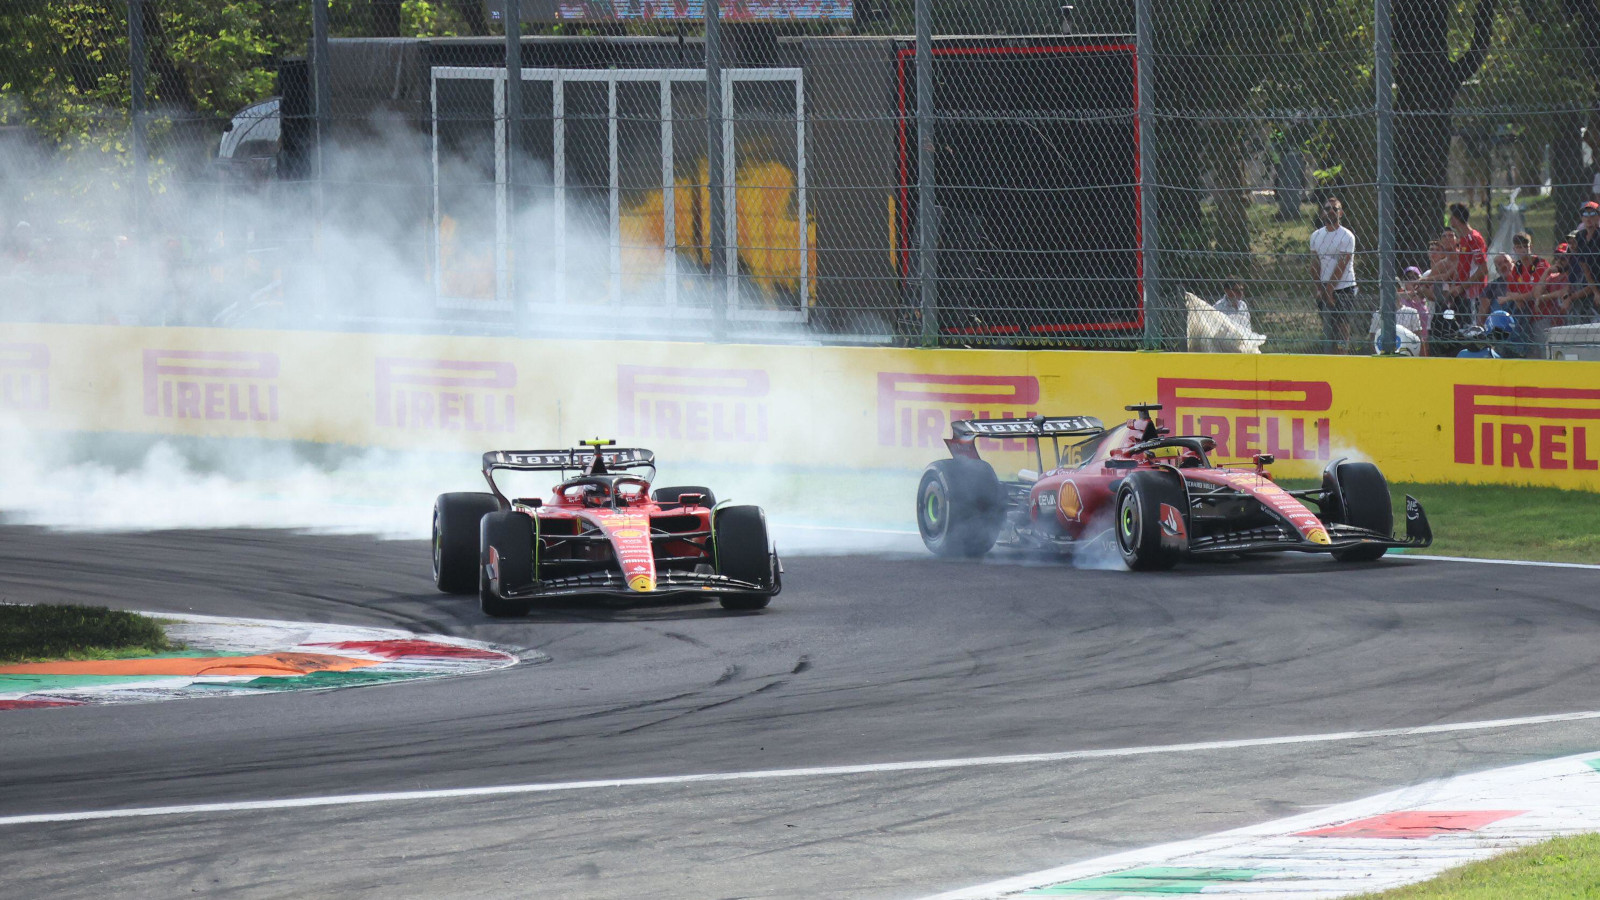 法拉利队友s Carlos Sainz and Charles Leclerc fighting for position at the Italian Grand Prix.